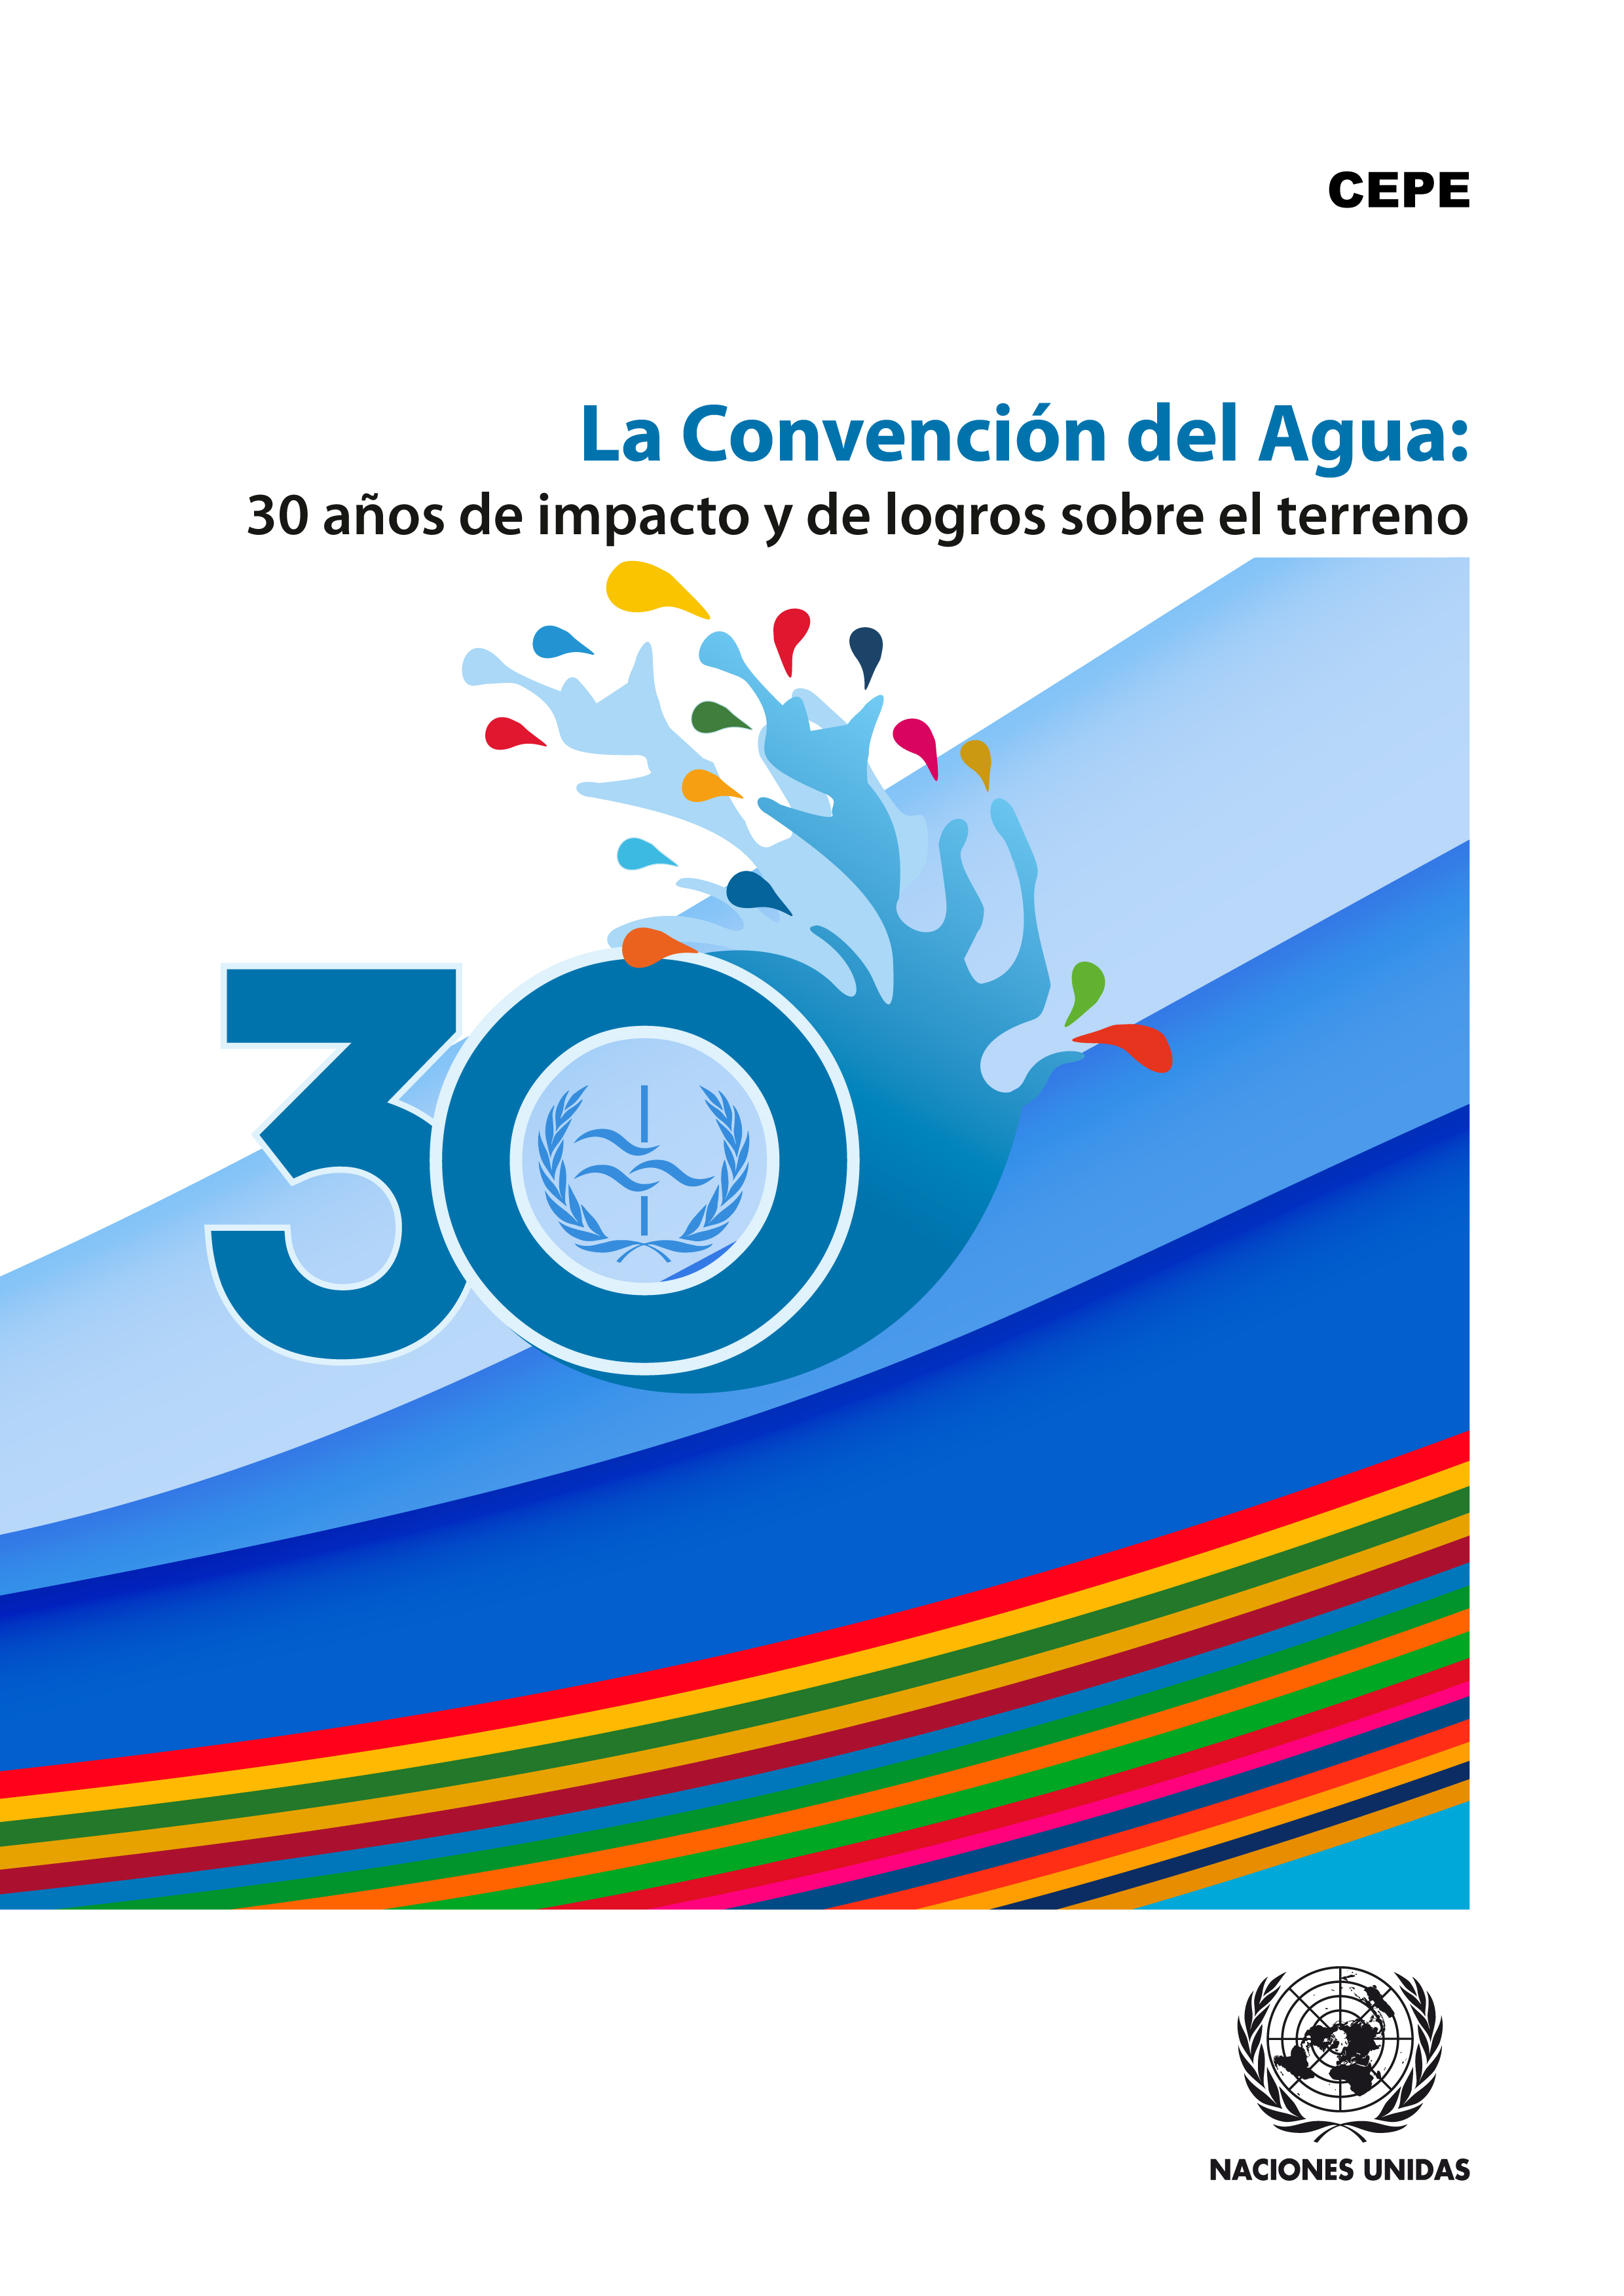 image of La Convención del Agua presta apoyo a la hora de tratar concesiones y tensiones intersectoriales